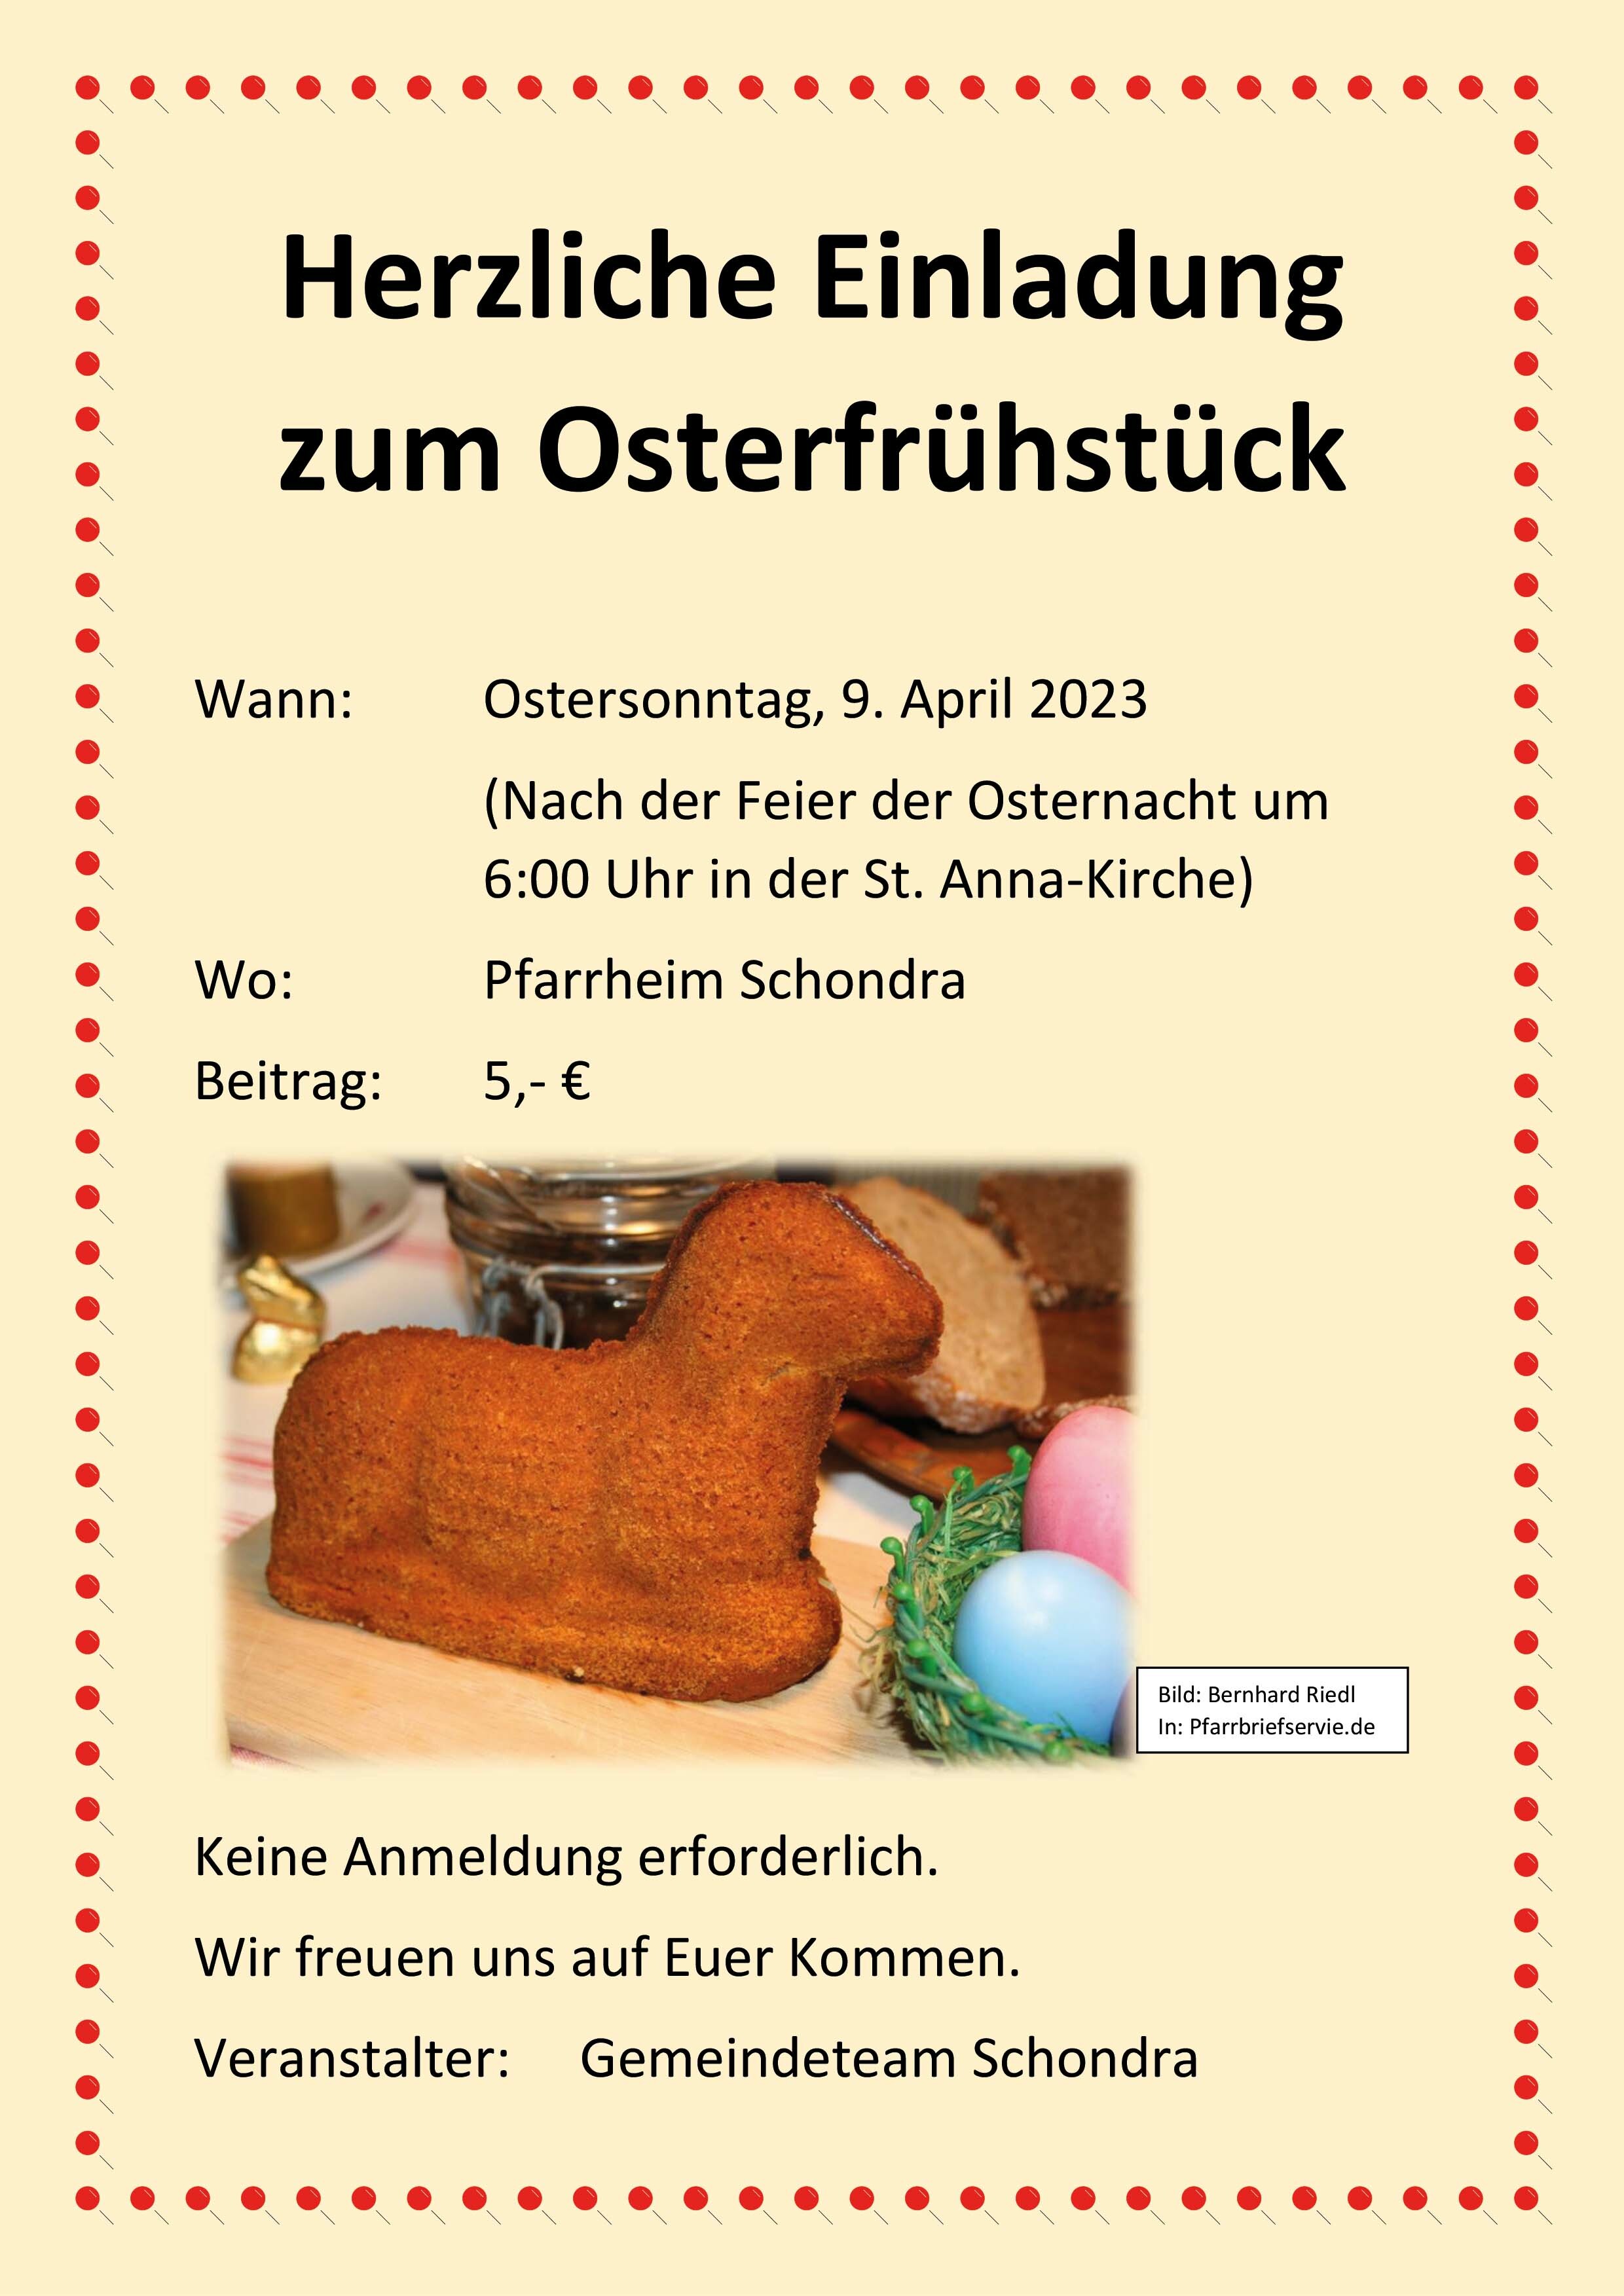 2023 04 09 Einladung Osterfrühstück